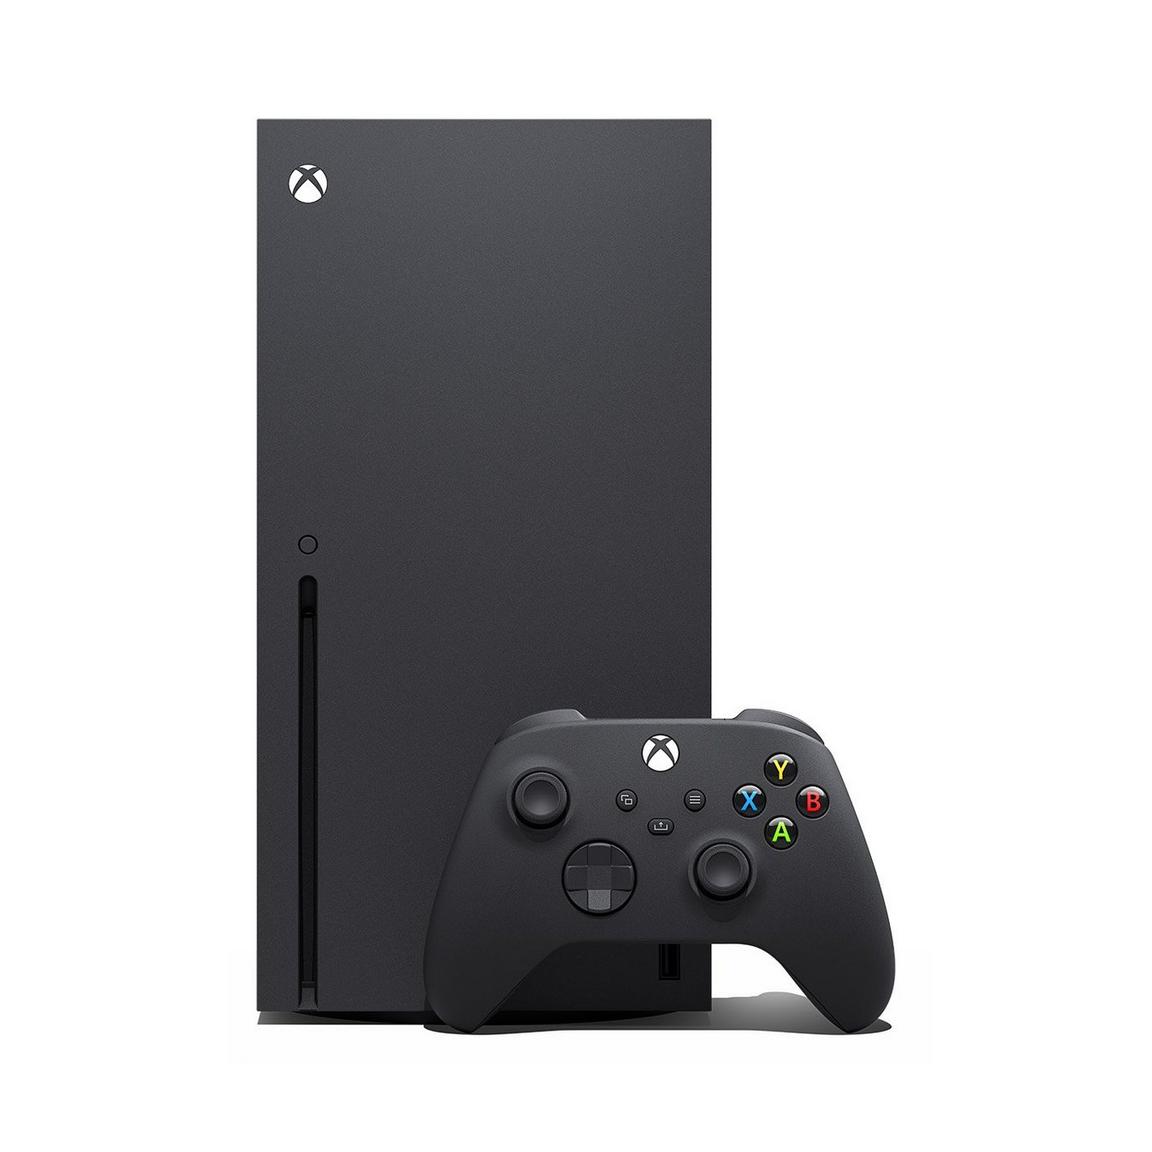 Microsoft - Xbox Series X Xbox All Access | GameStop